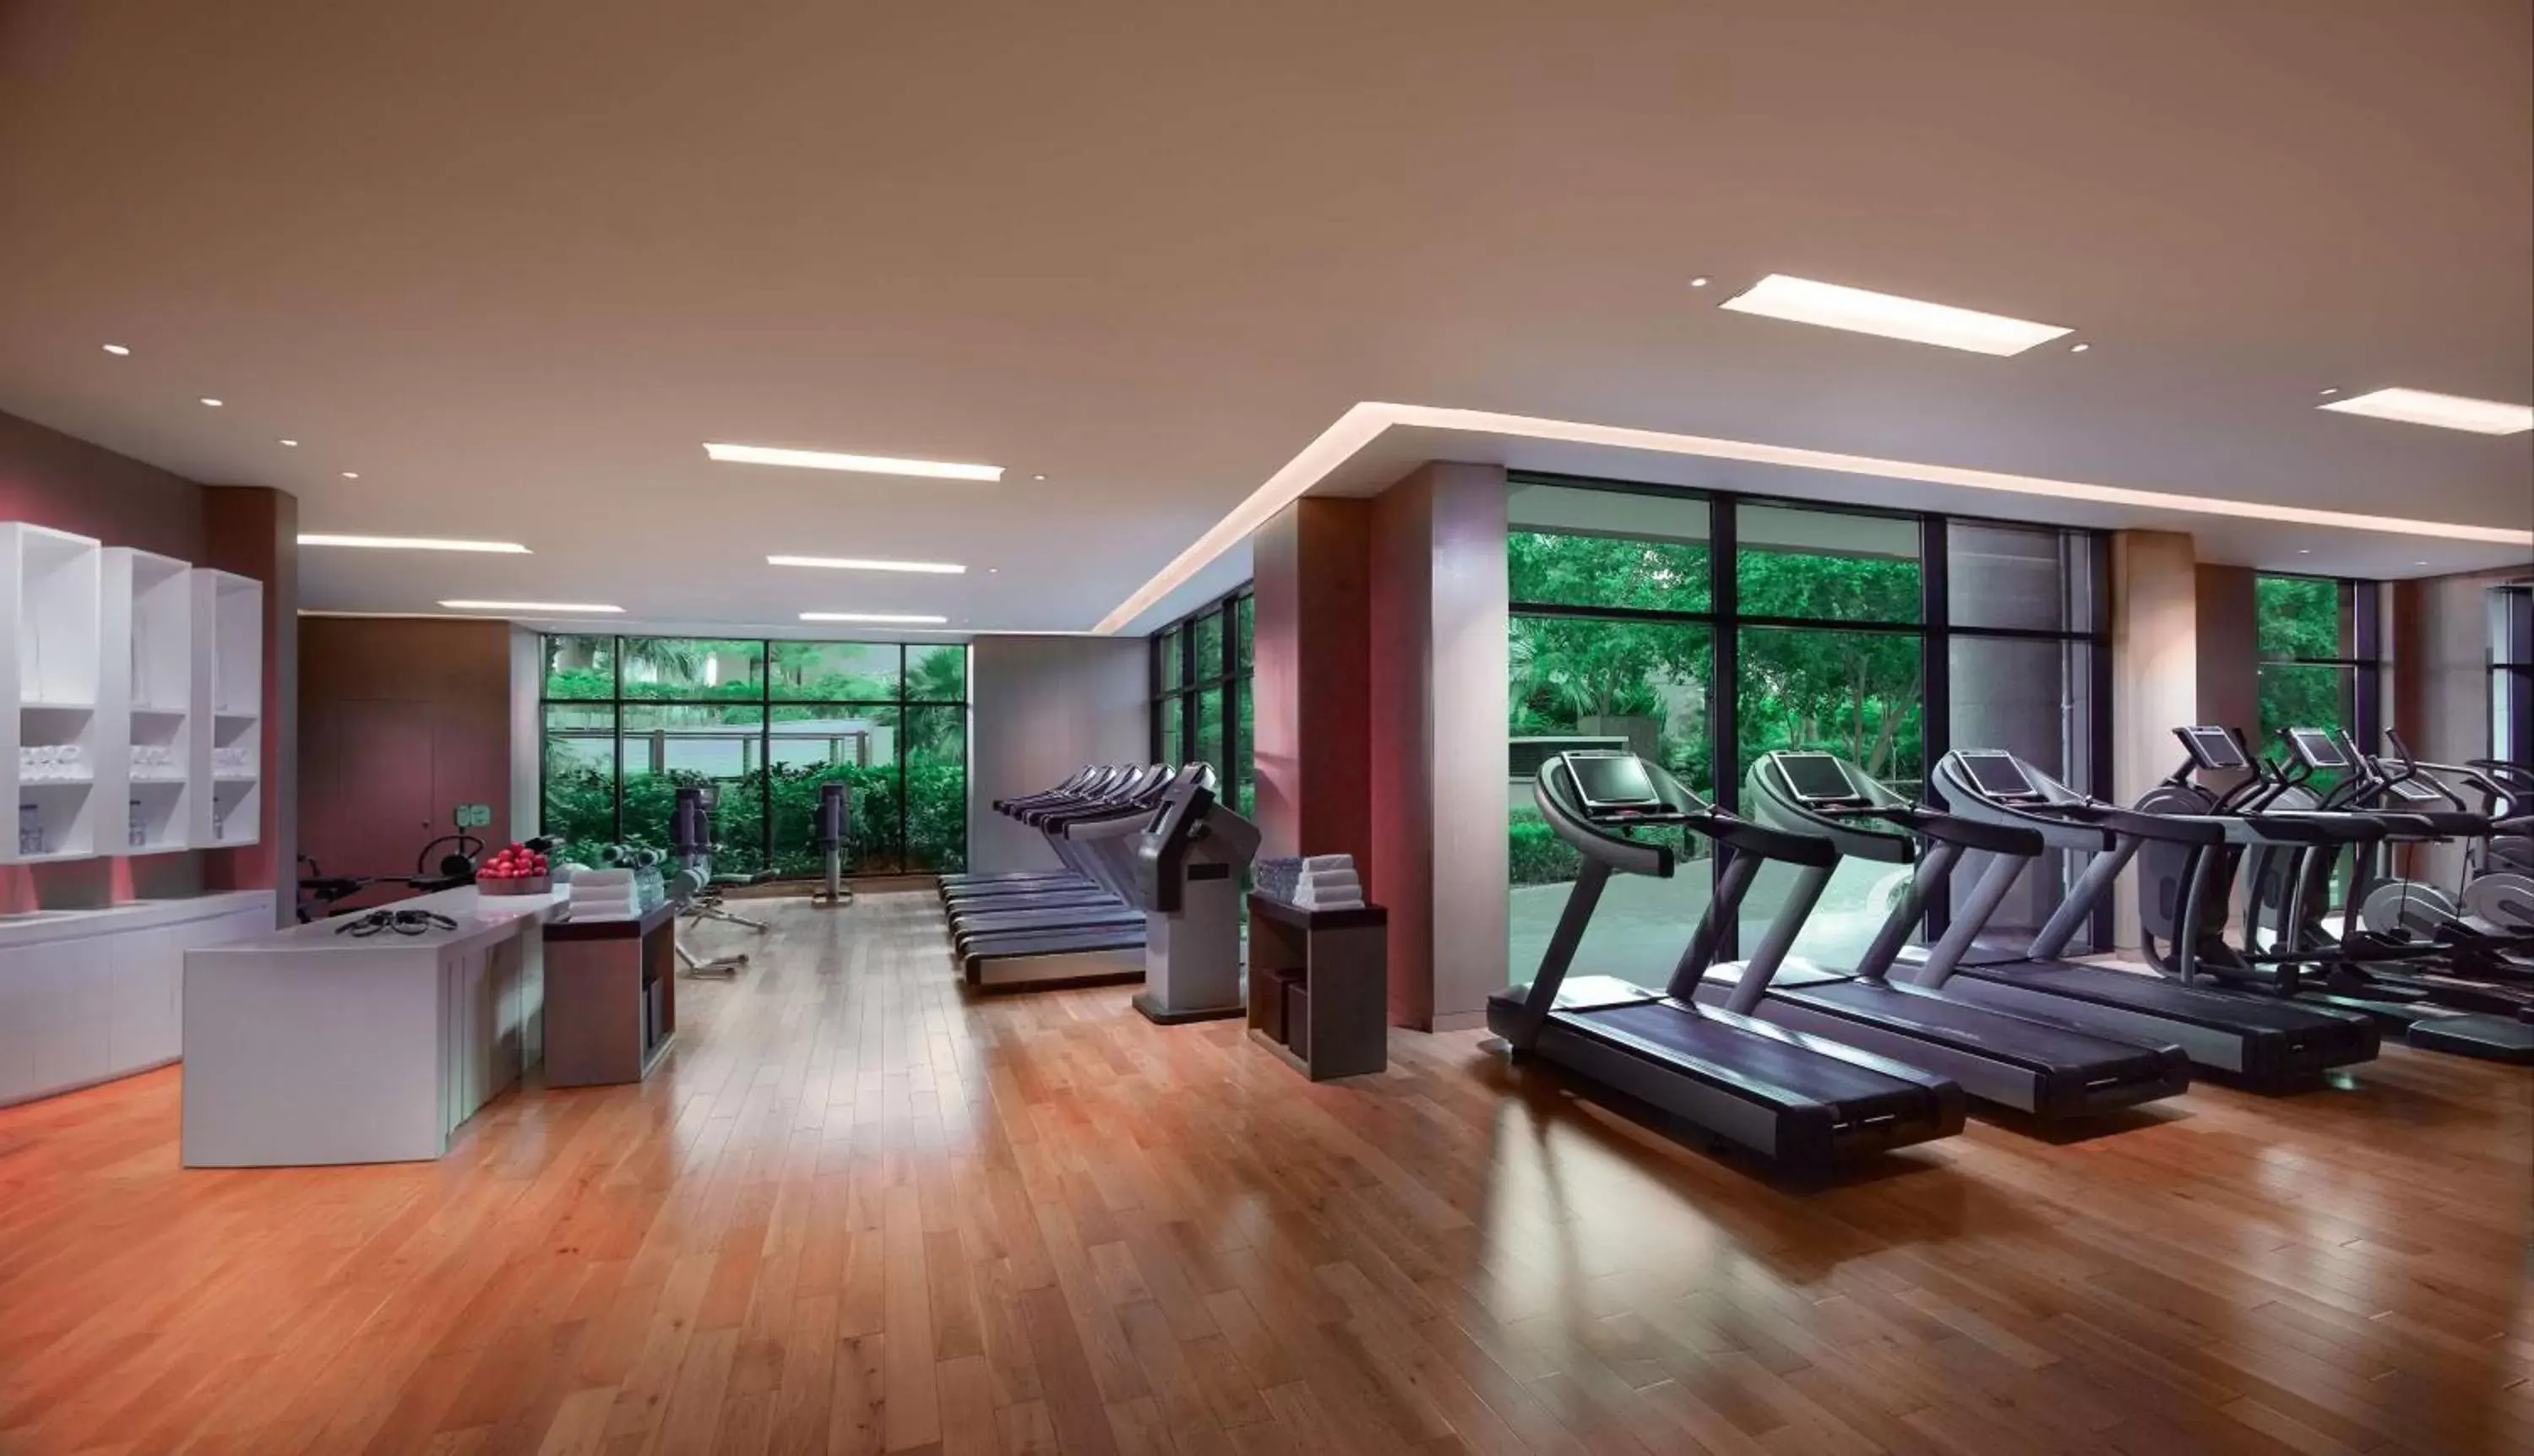 Fitness centre/facilities, Fitness Center/Facilities in Grand Hyatt Dubai